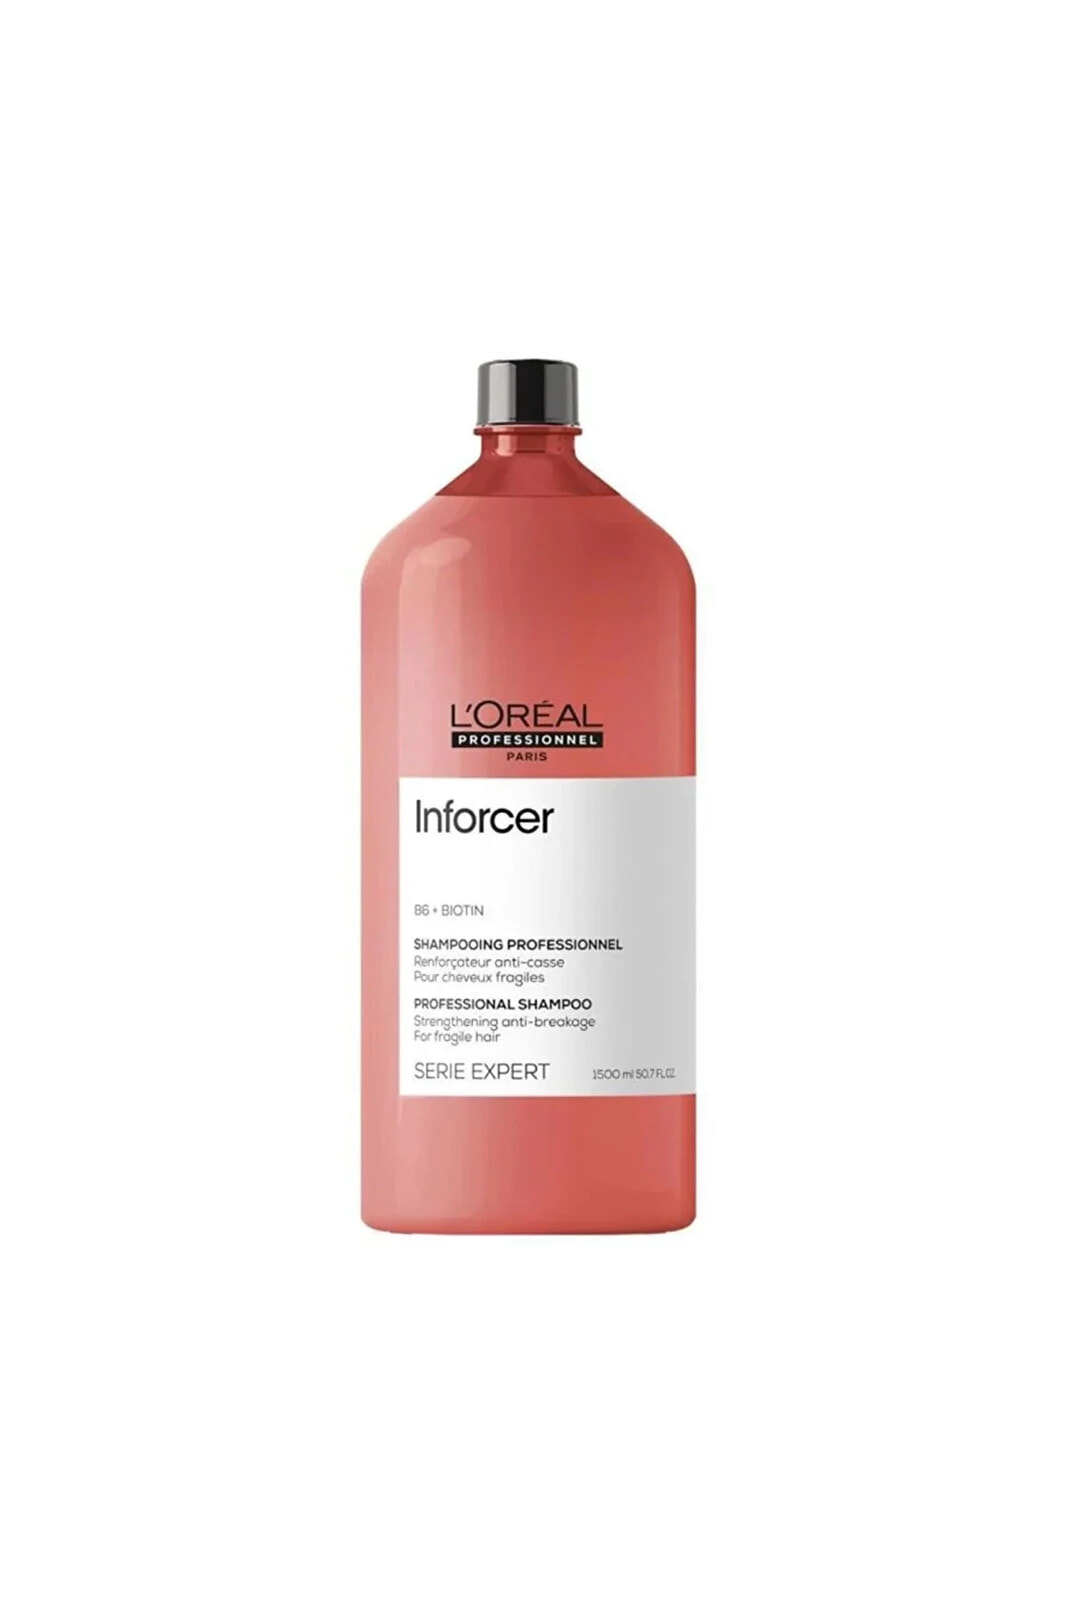 L'Oreal Professionnel Serie Expert Inforcer Shampoo Укрепляющий шампунь с витамином В6 и биотином для ломких волос 1500 мл